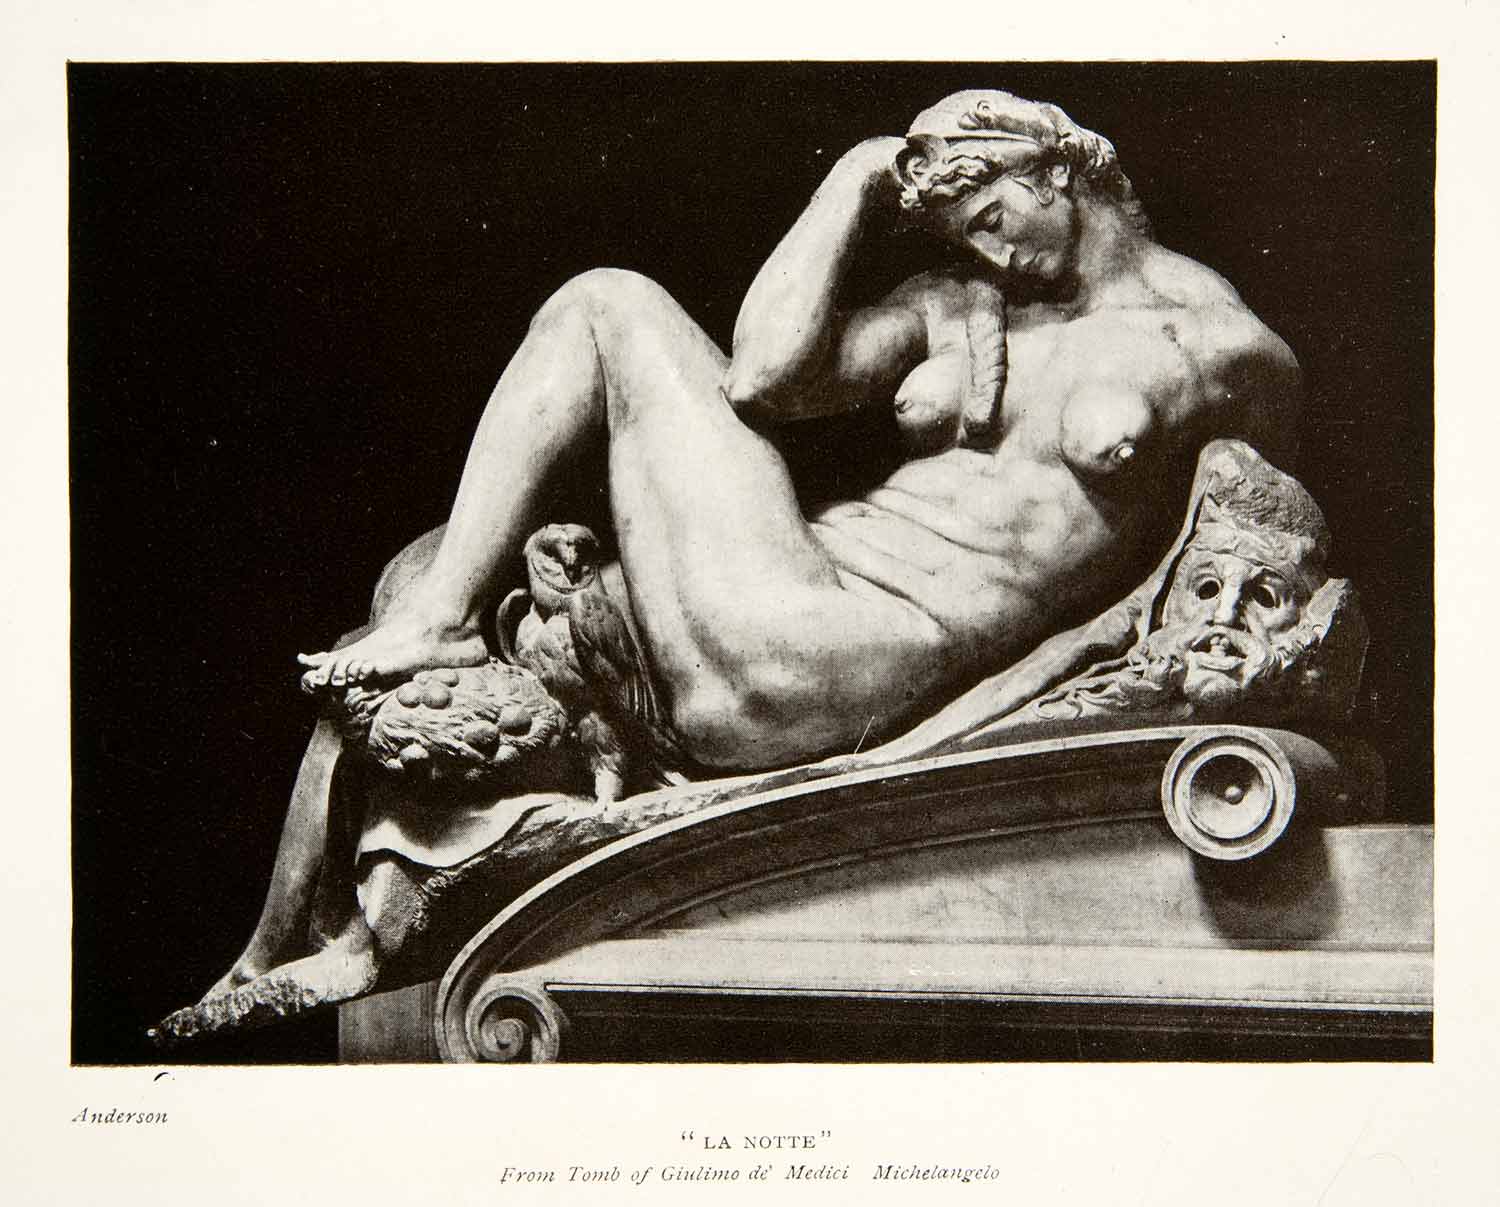 1907 Print La Notte Tomb Giulimo de' Medici Michelangelo Italy Anderson XGLB1